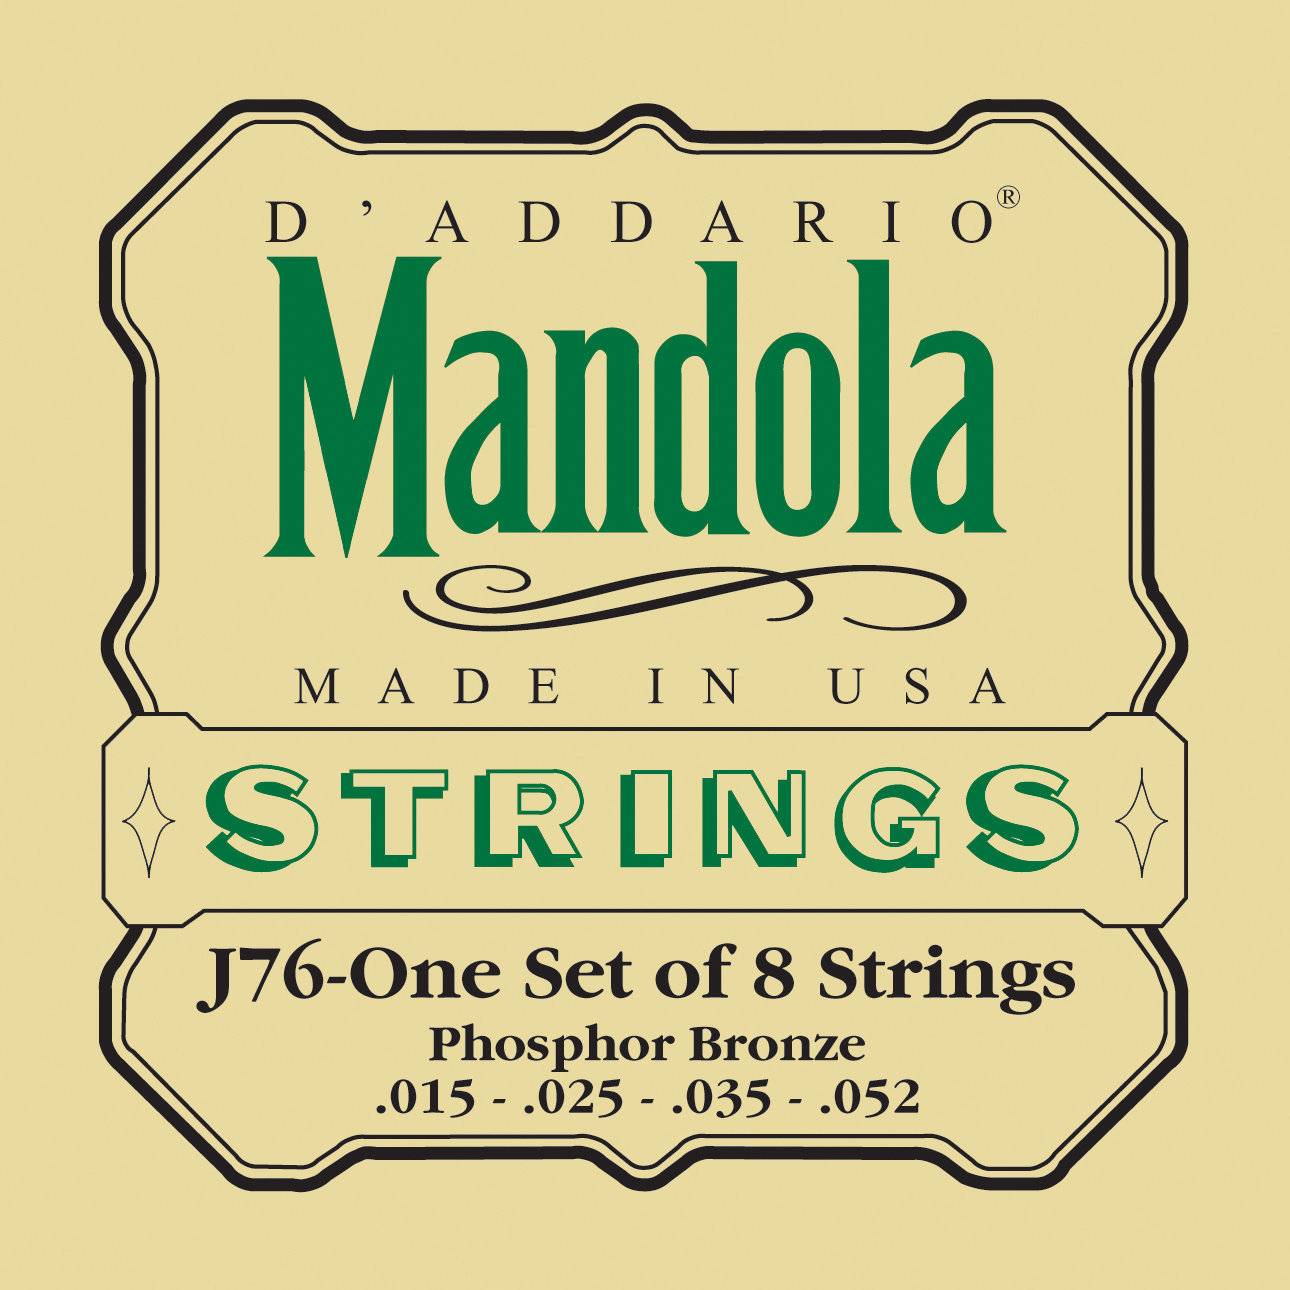 Snaren voor mandoline D'Addario J76 Mandolin Strings